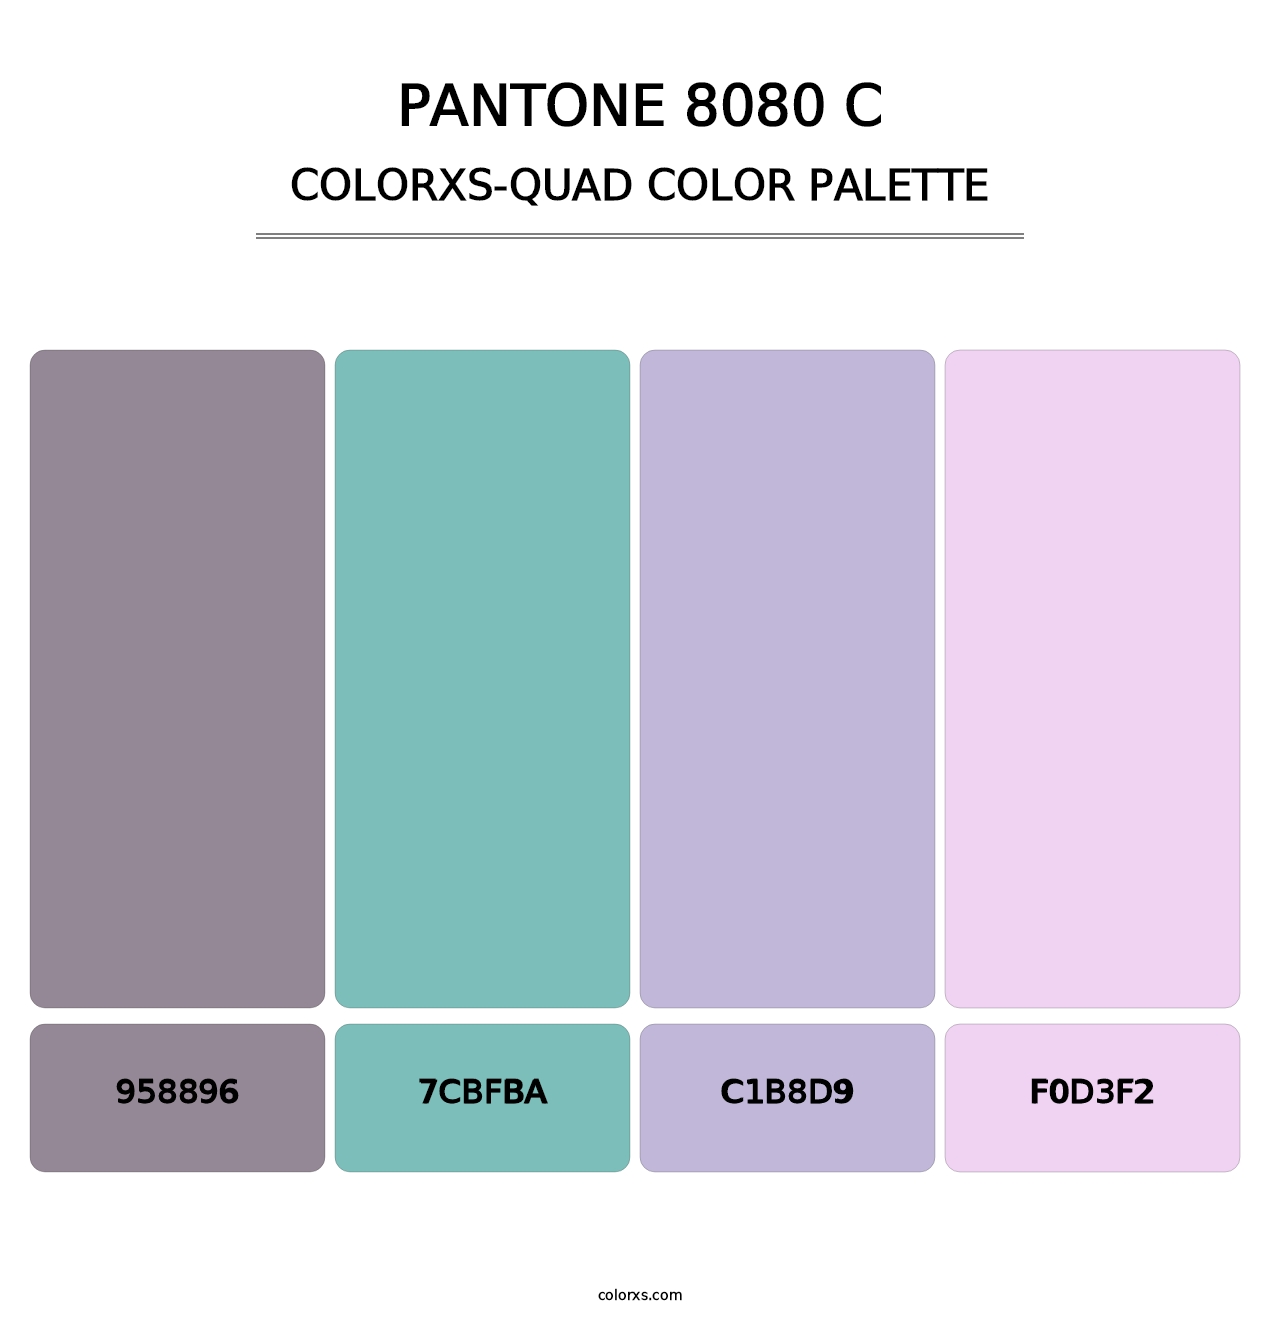 PANTONE 8080 C - Colorxs Quad Palette